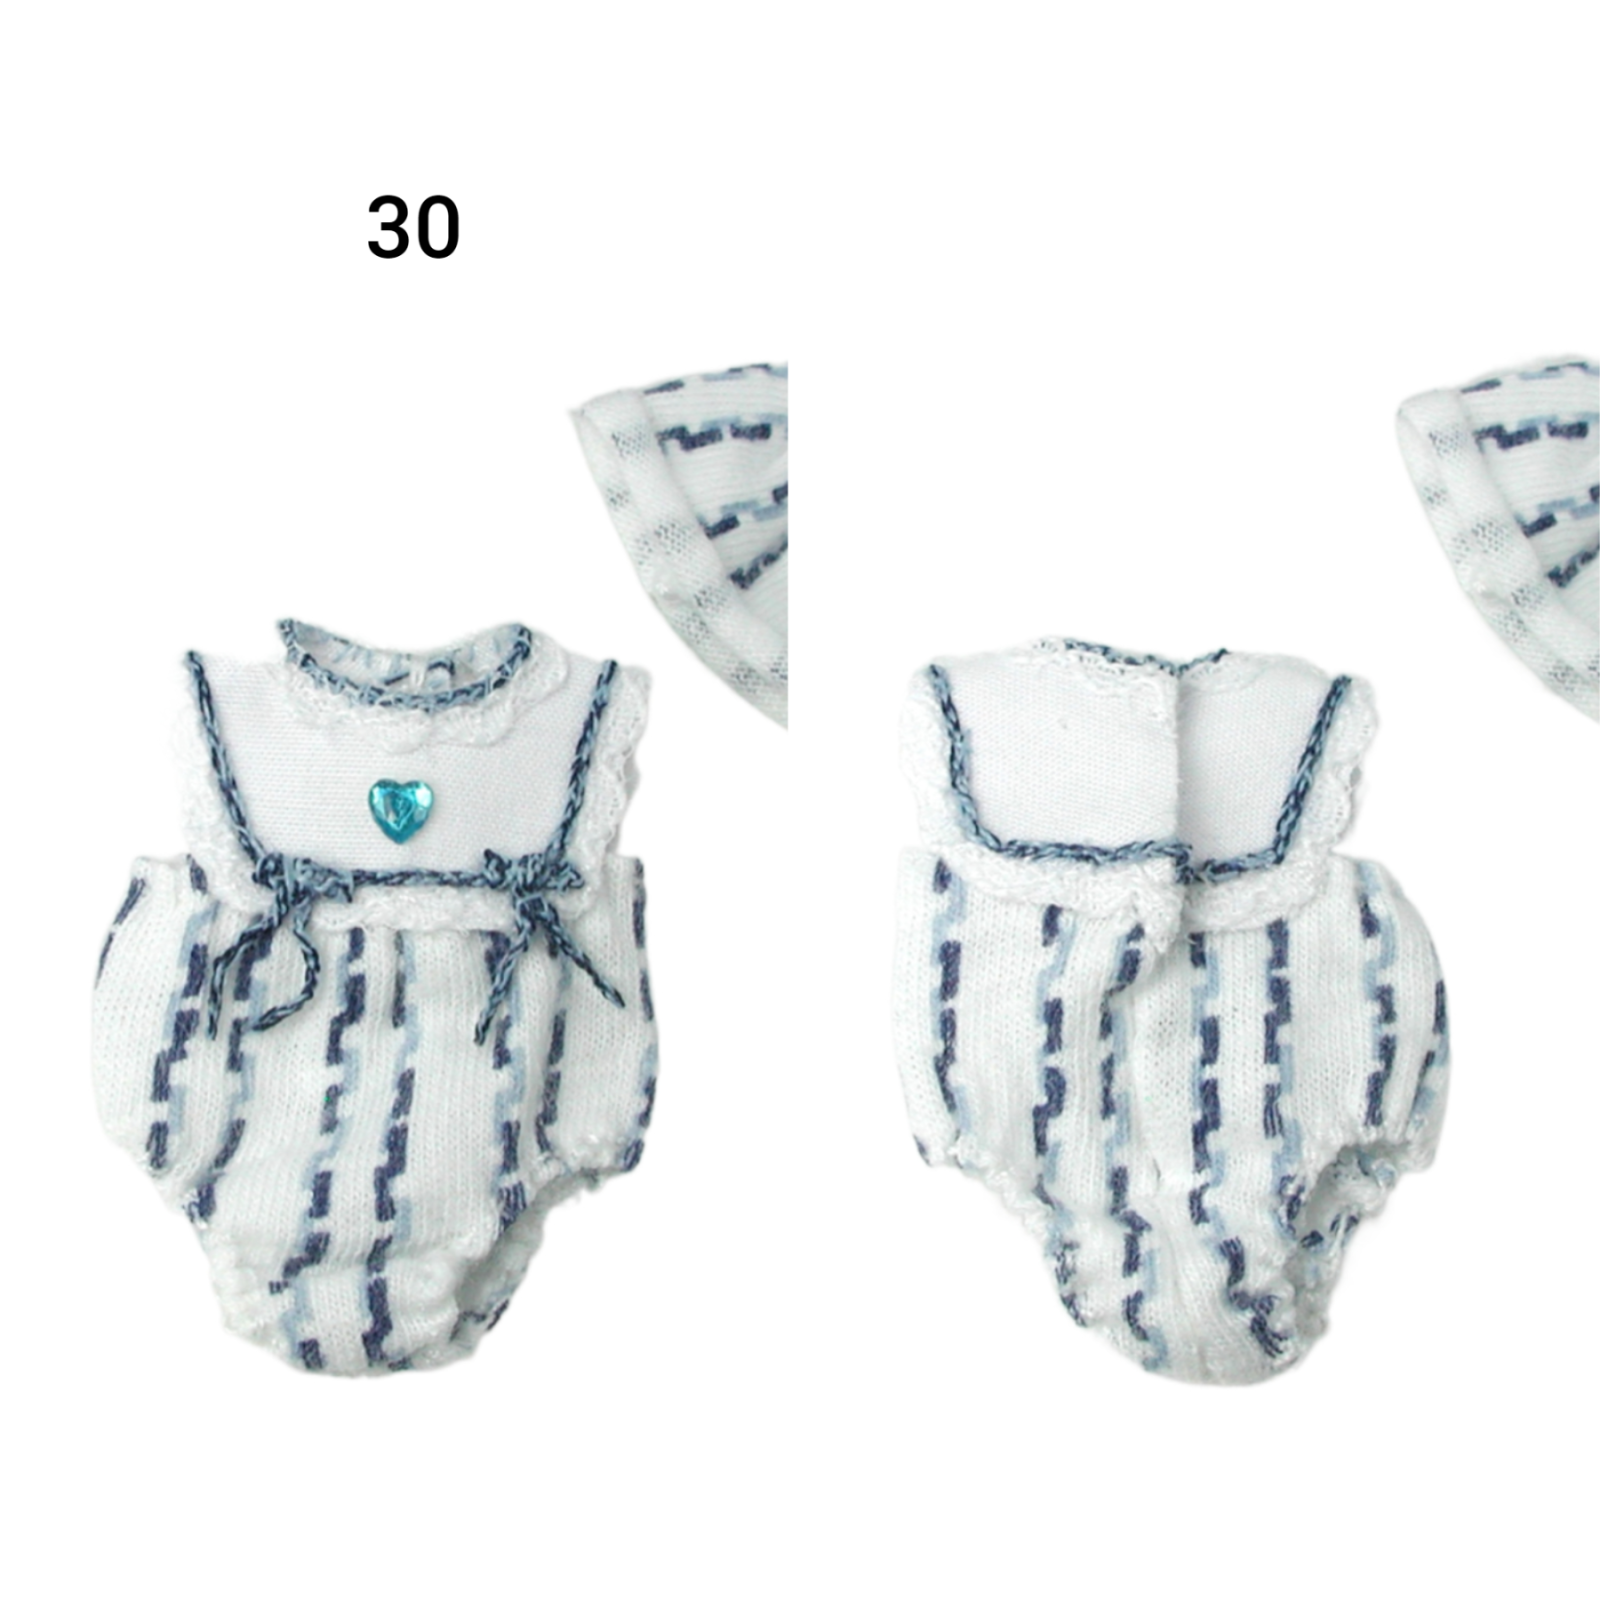 Pumphose Spielhose für das Baby Kleidung Maßstab 1:12 6